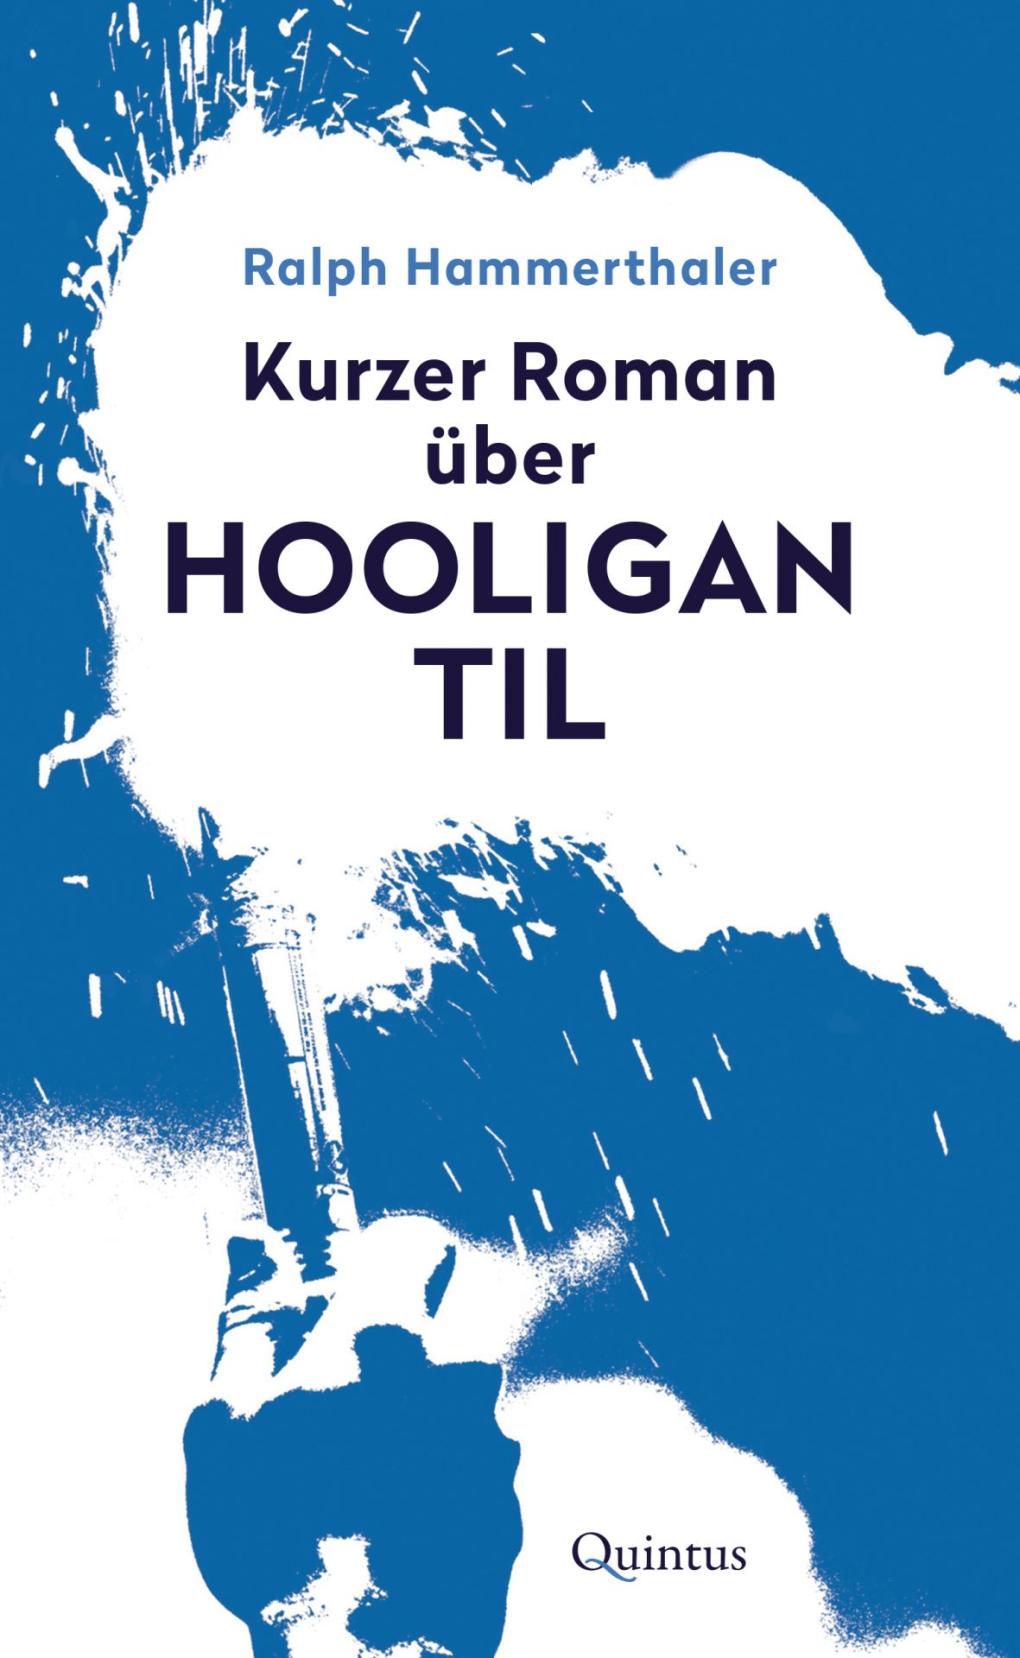 Cover zum Kurzroman "Hooligan Til".